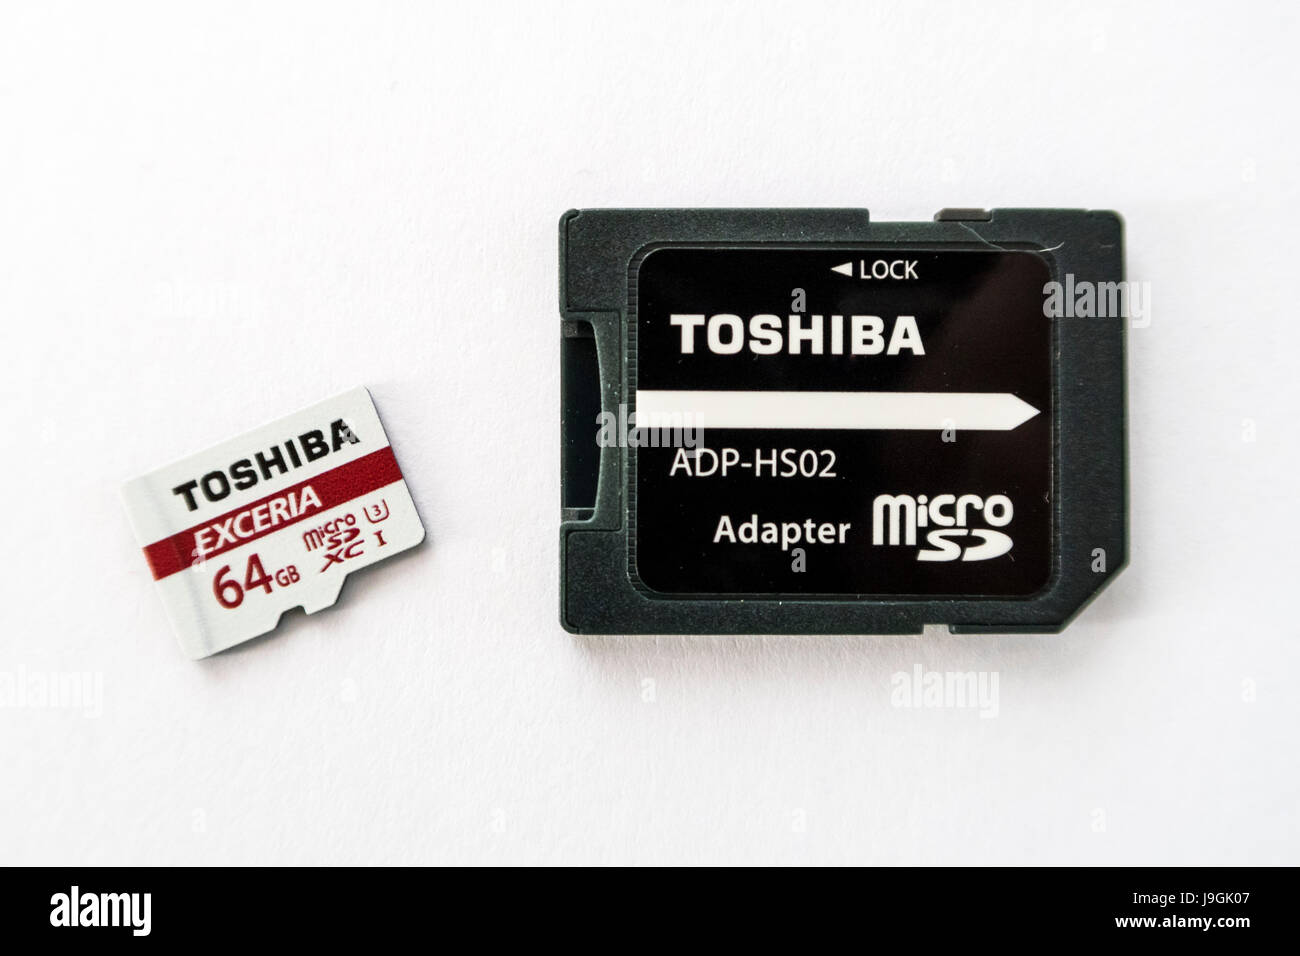 Toshiba Exceria XC microSD carte mémoire avec une capacité de 64 Go, et une carte microSD d'adaptateur pour carte SD sur fond blanc. Banque D'Images